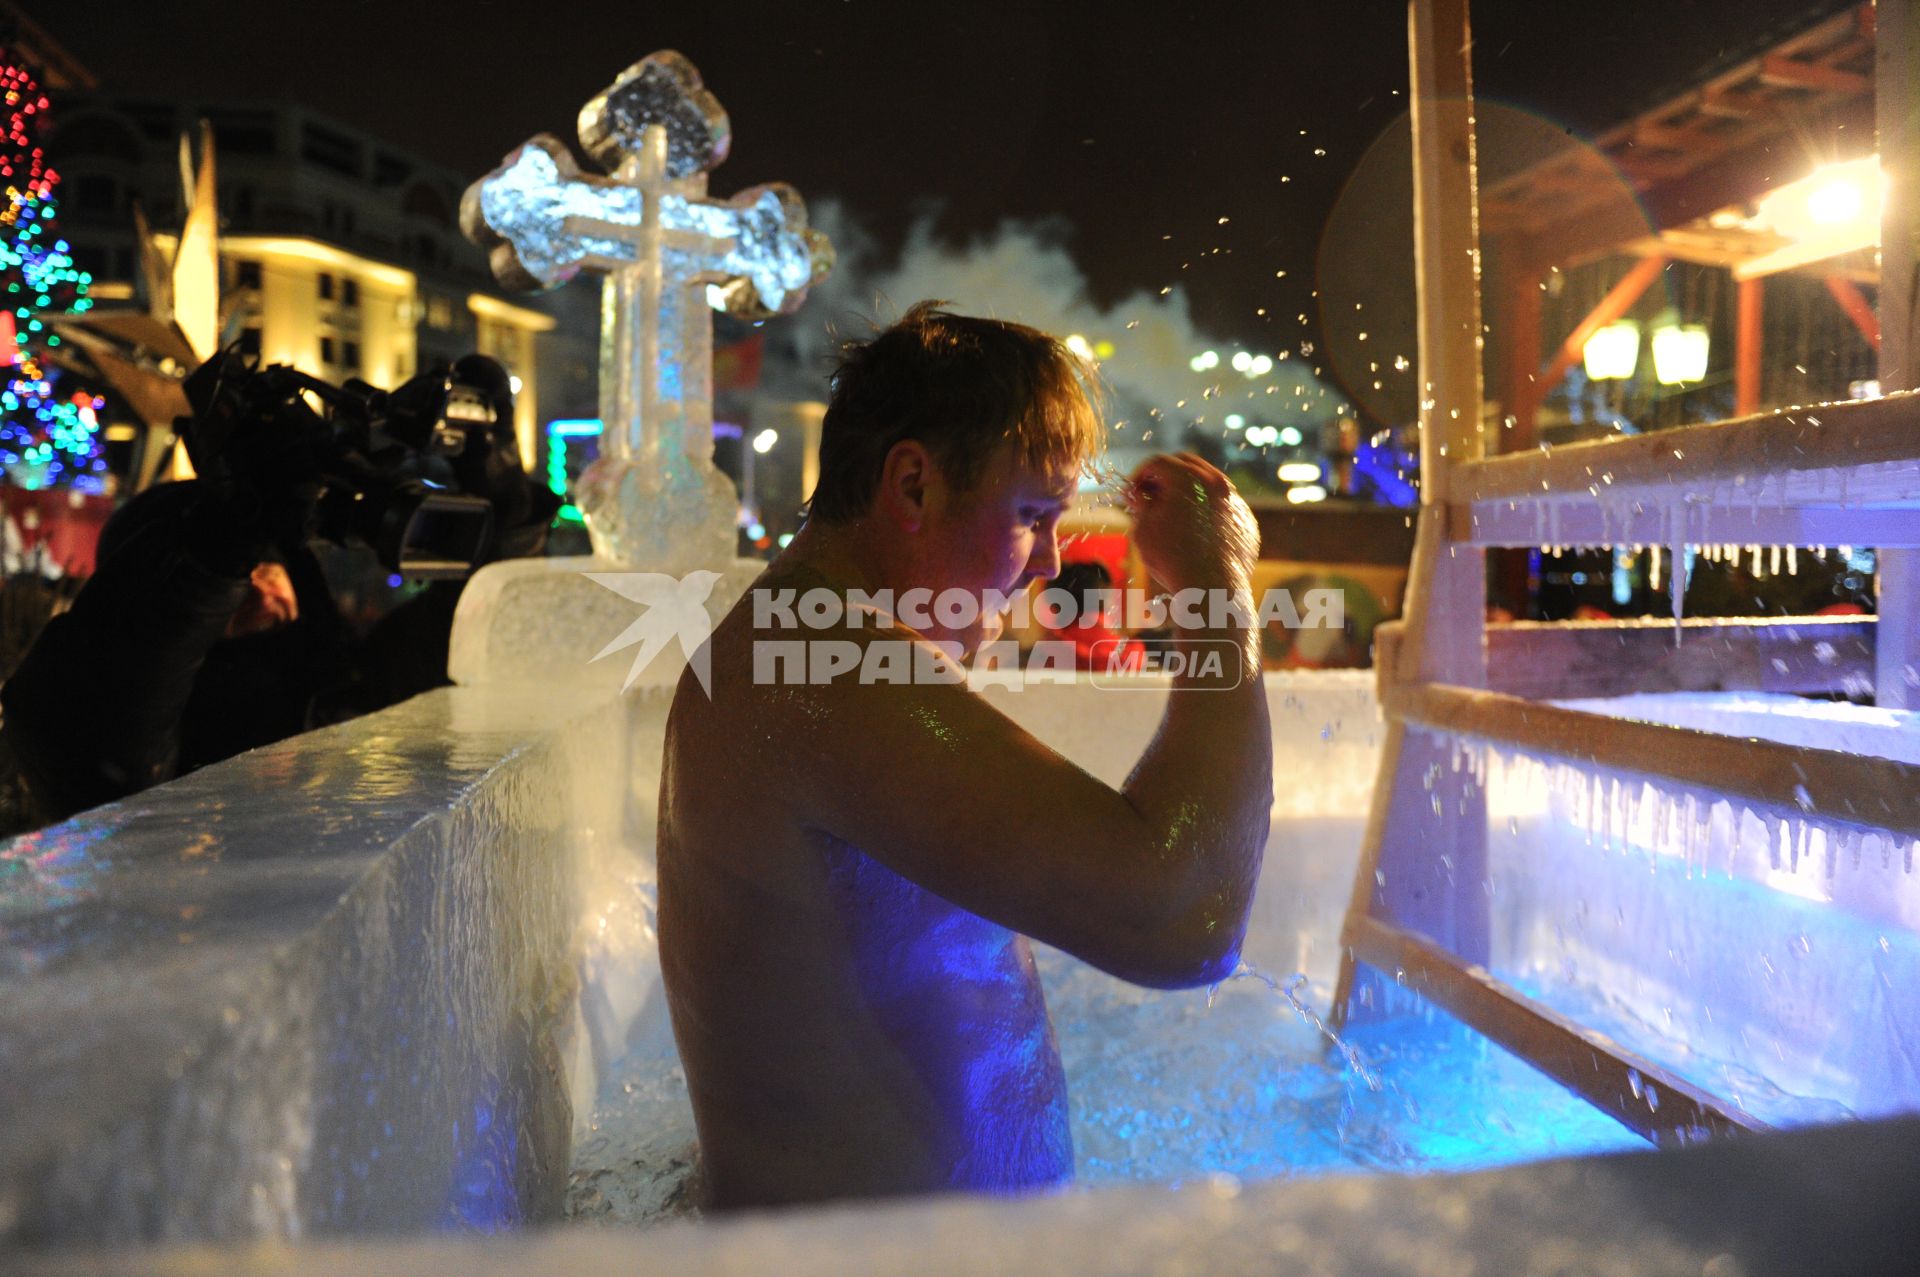 Празднования Крещения Господня в Москве. На снимке: мужчина окунается в купель на площади Революции.